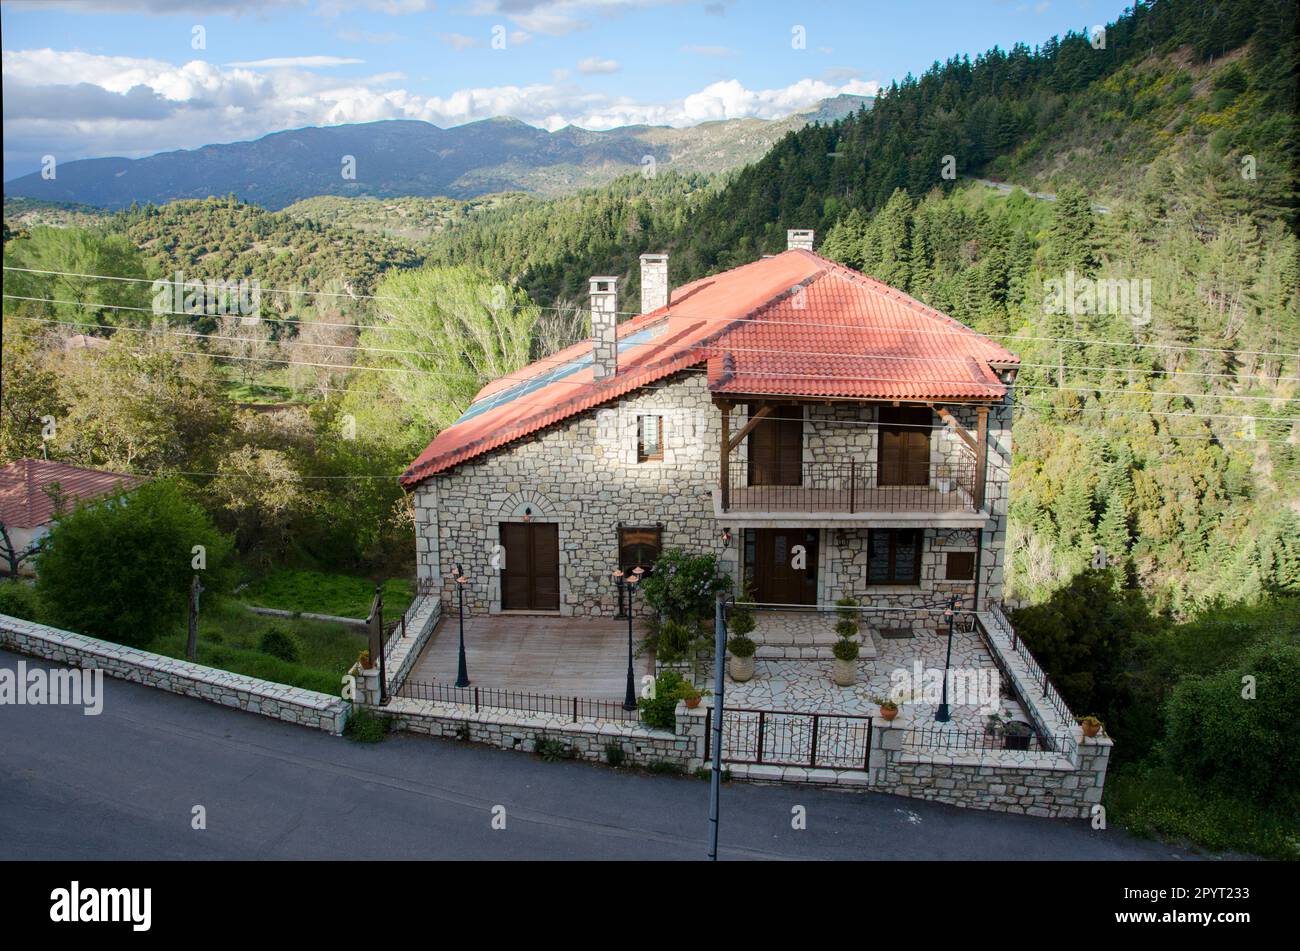 Casa in villaggio nature.Baltesiniko, Arkadia, Grecia. Foto Stock